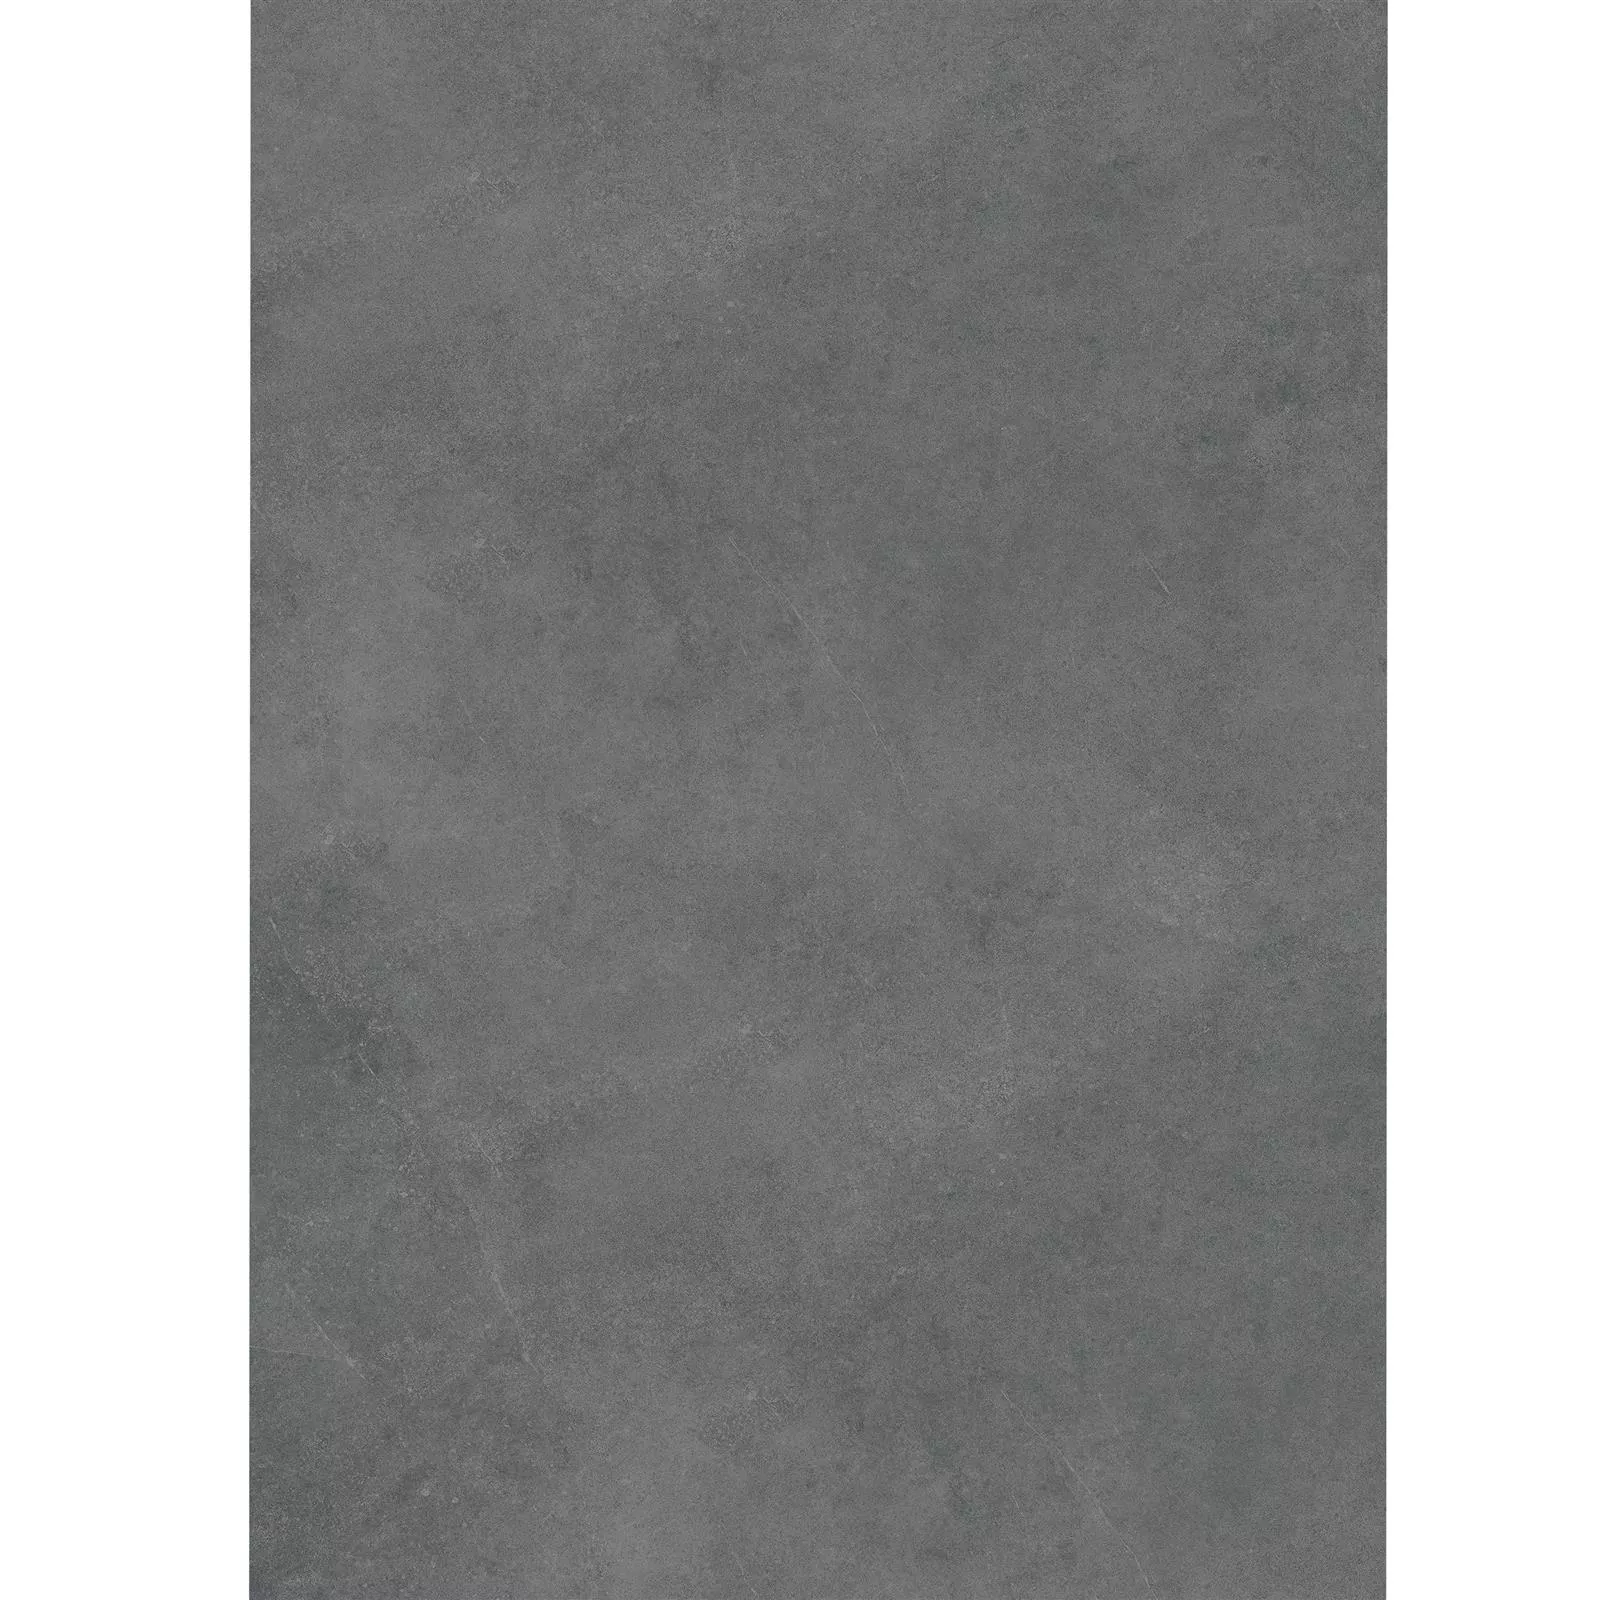 Piastrella Esterni Ottica Di Cemento Glinde Antracite 60x120cm